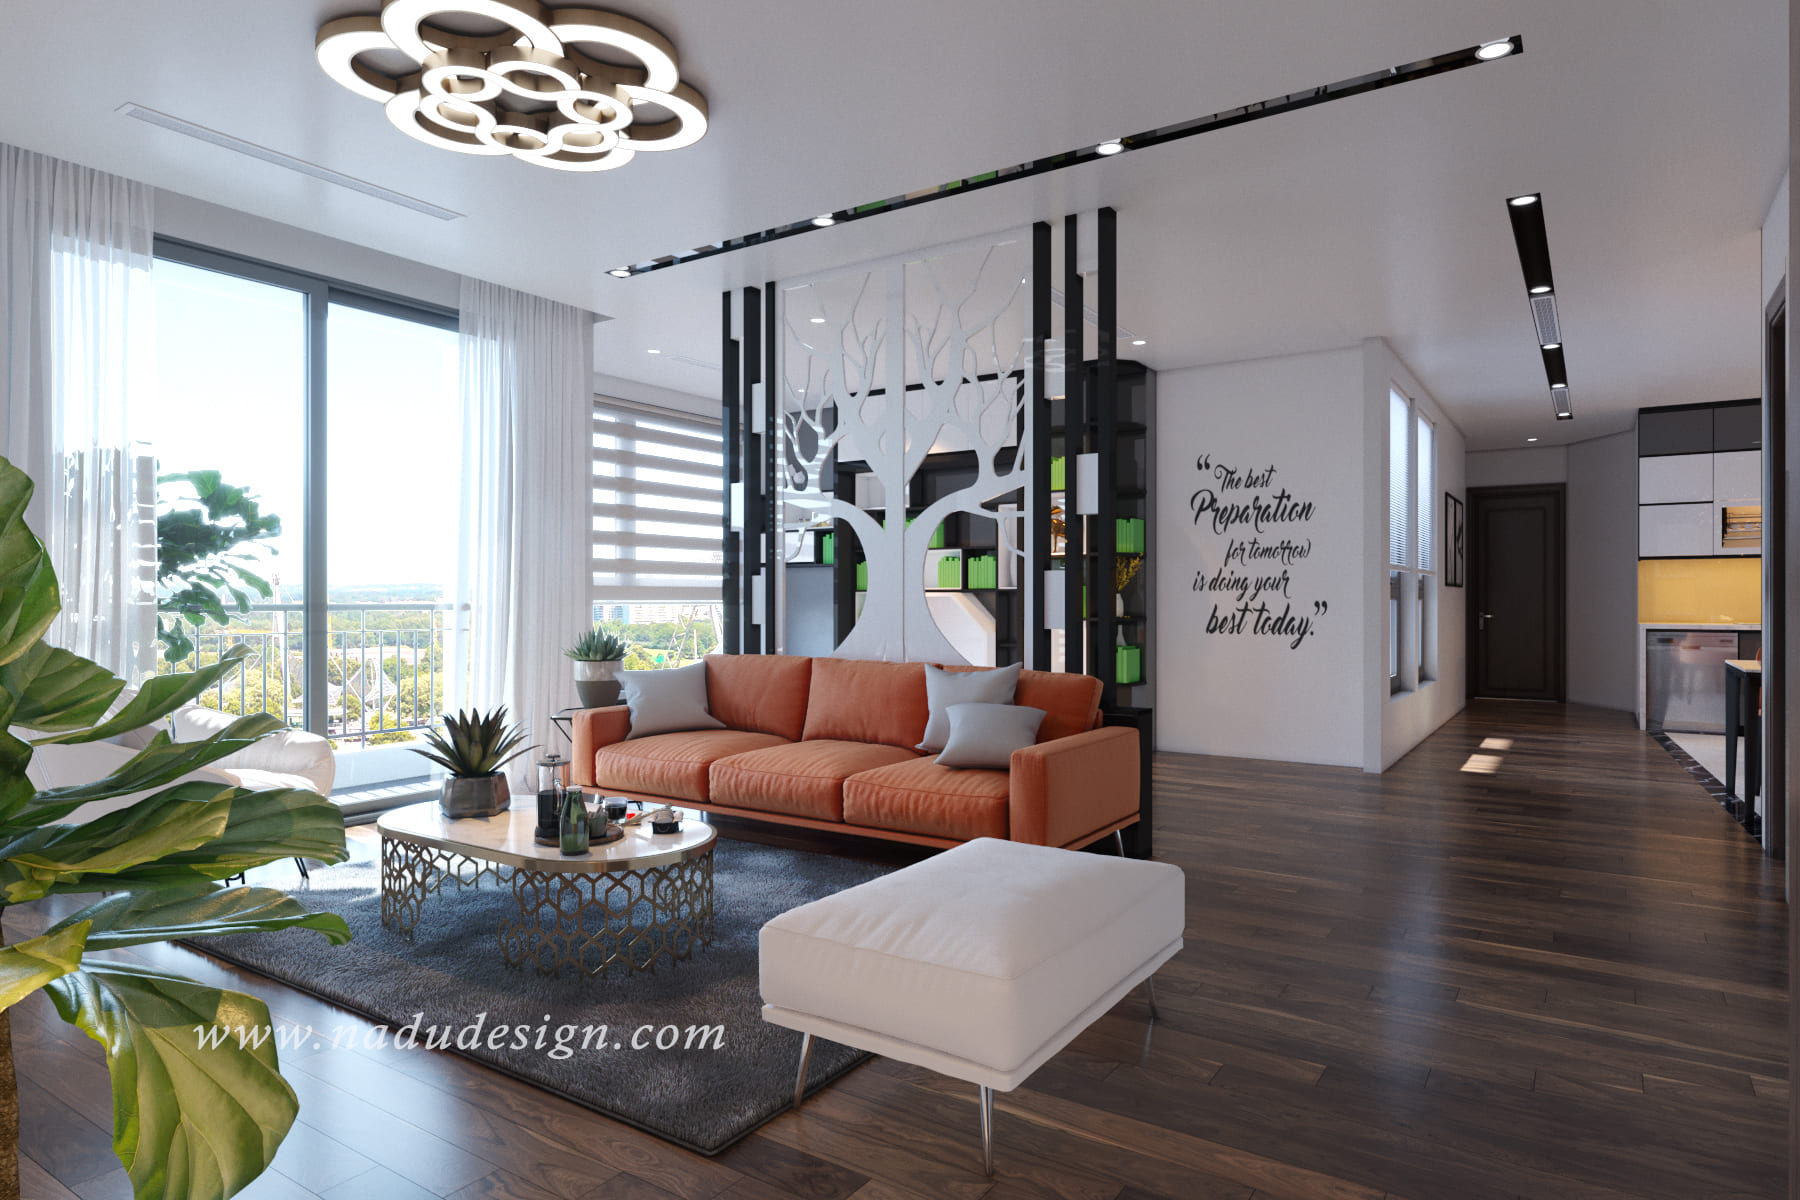 Thiết kế nội thất căn hộ Vinhomes Green Bay nổi bật với bộ sofa cam ấm nóng